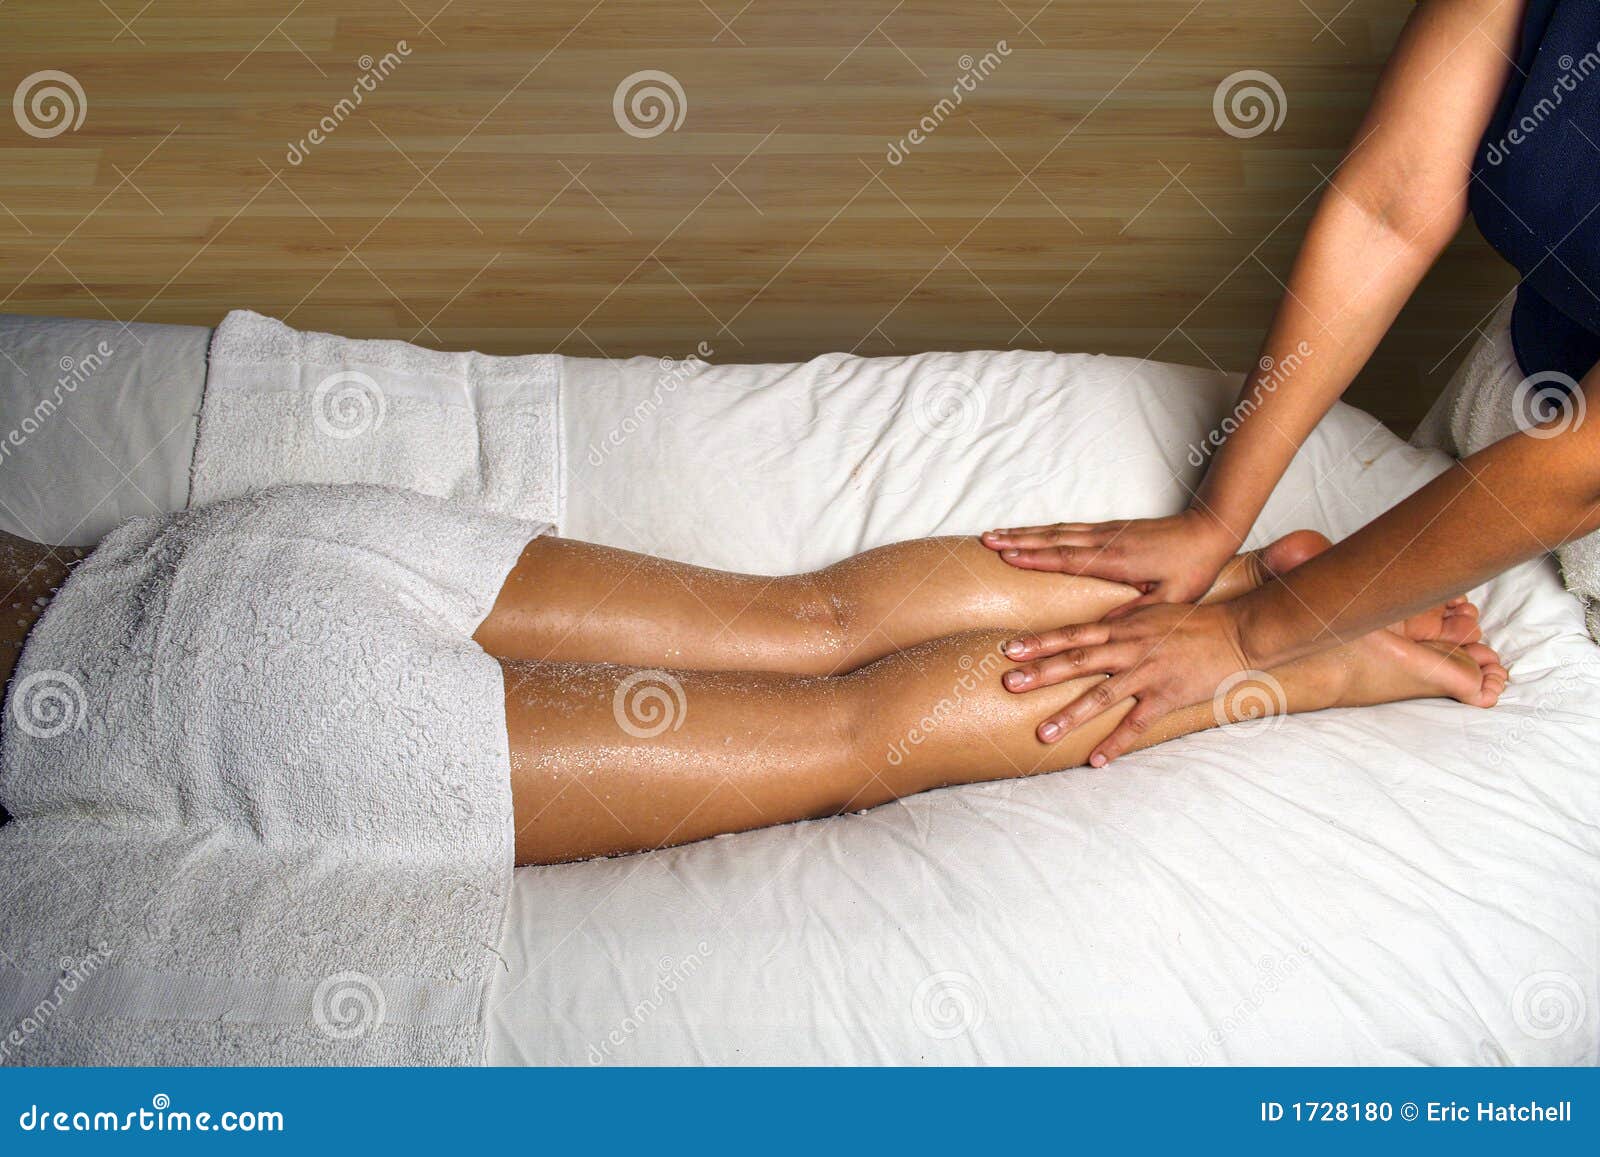 Massage chart foot sensual 